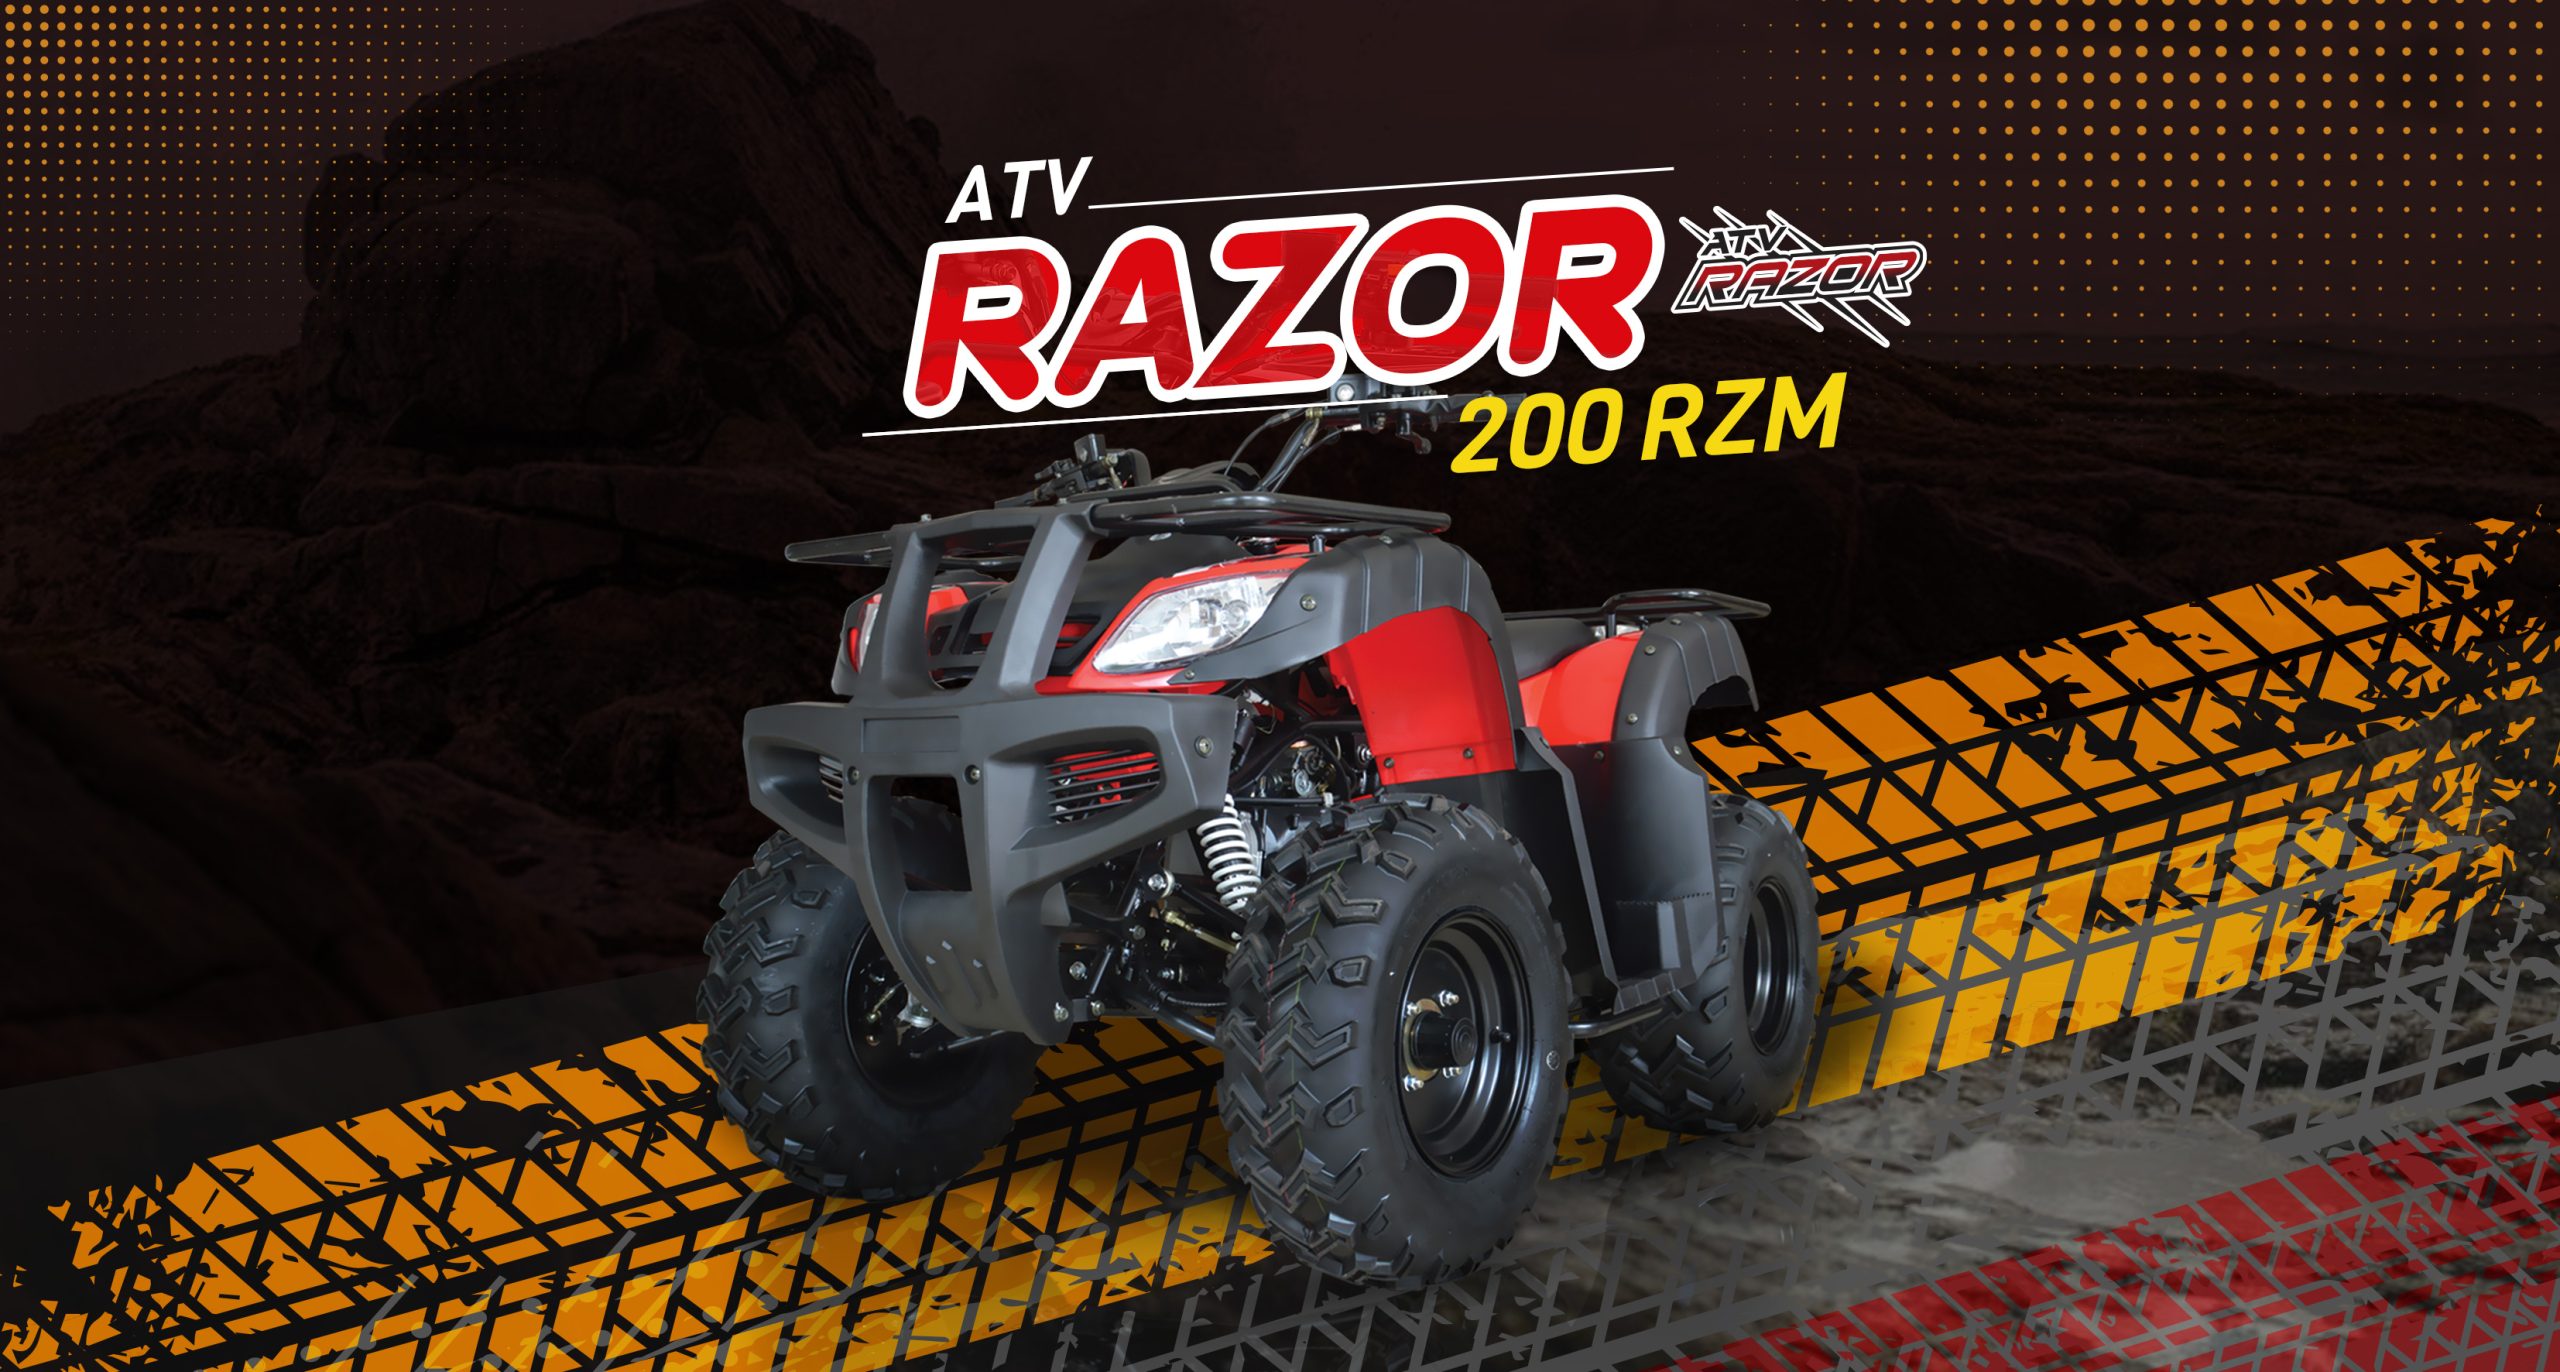 Off-Road-Razor 200RZM